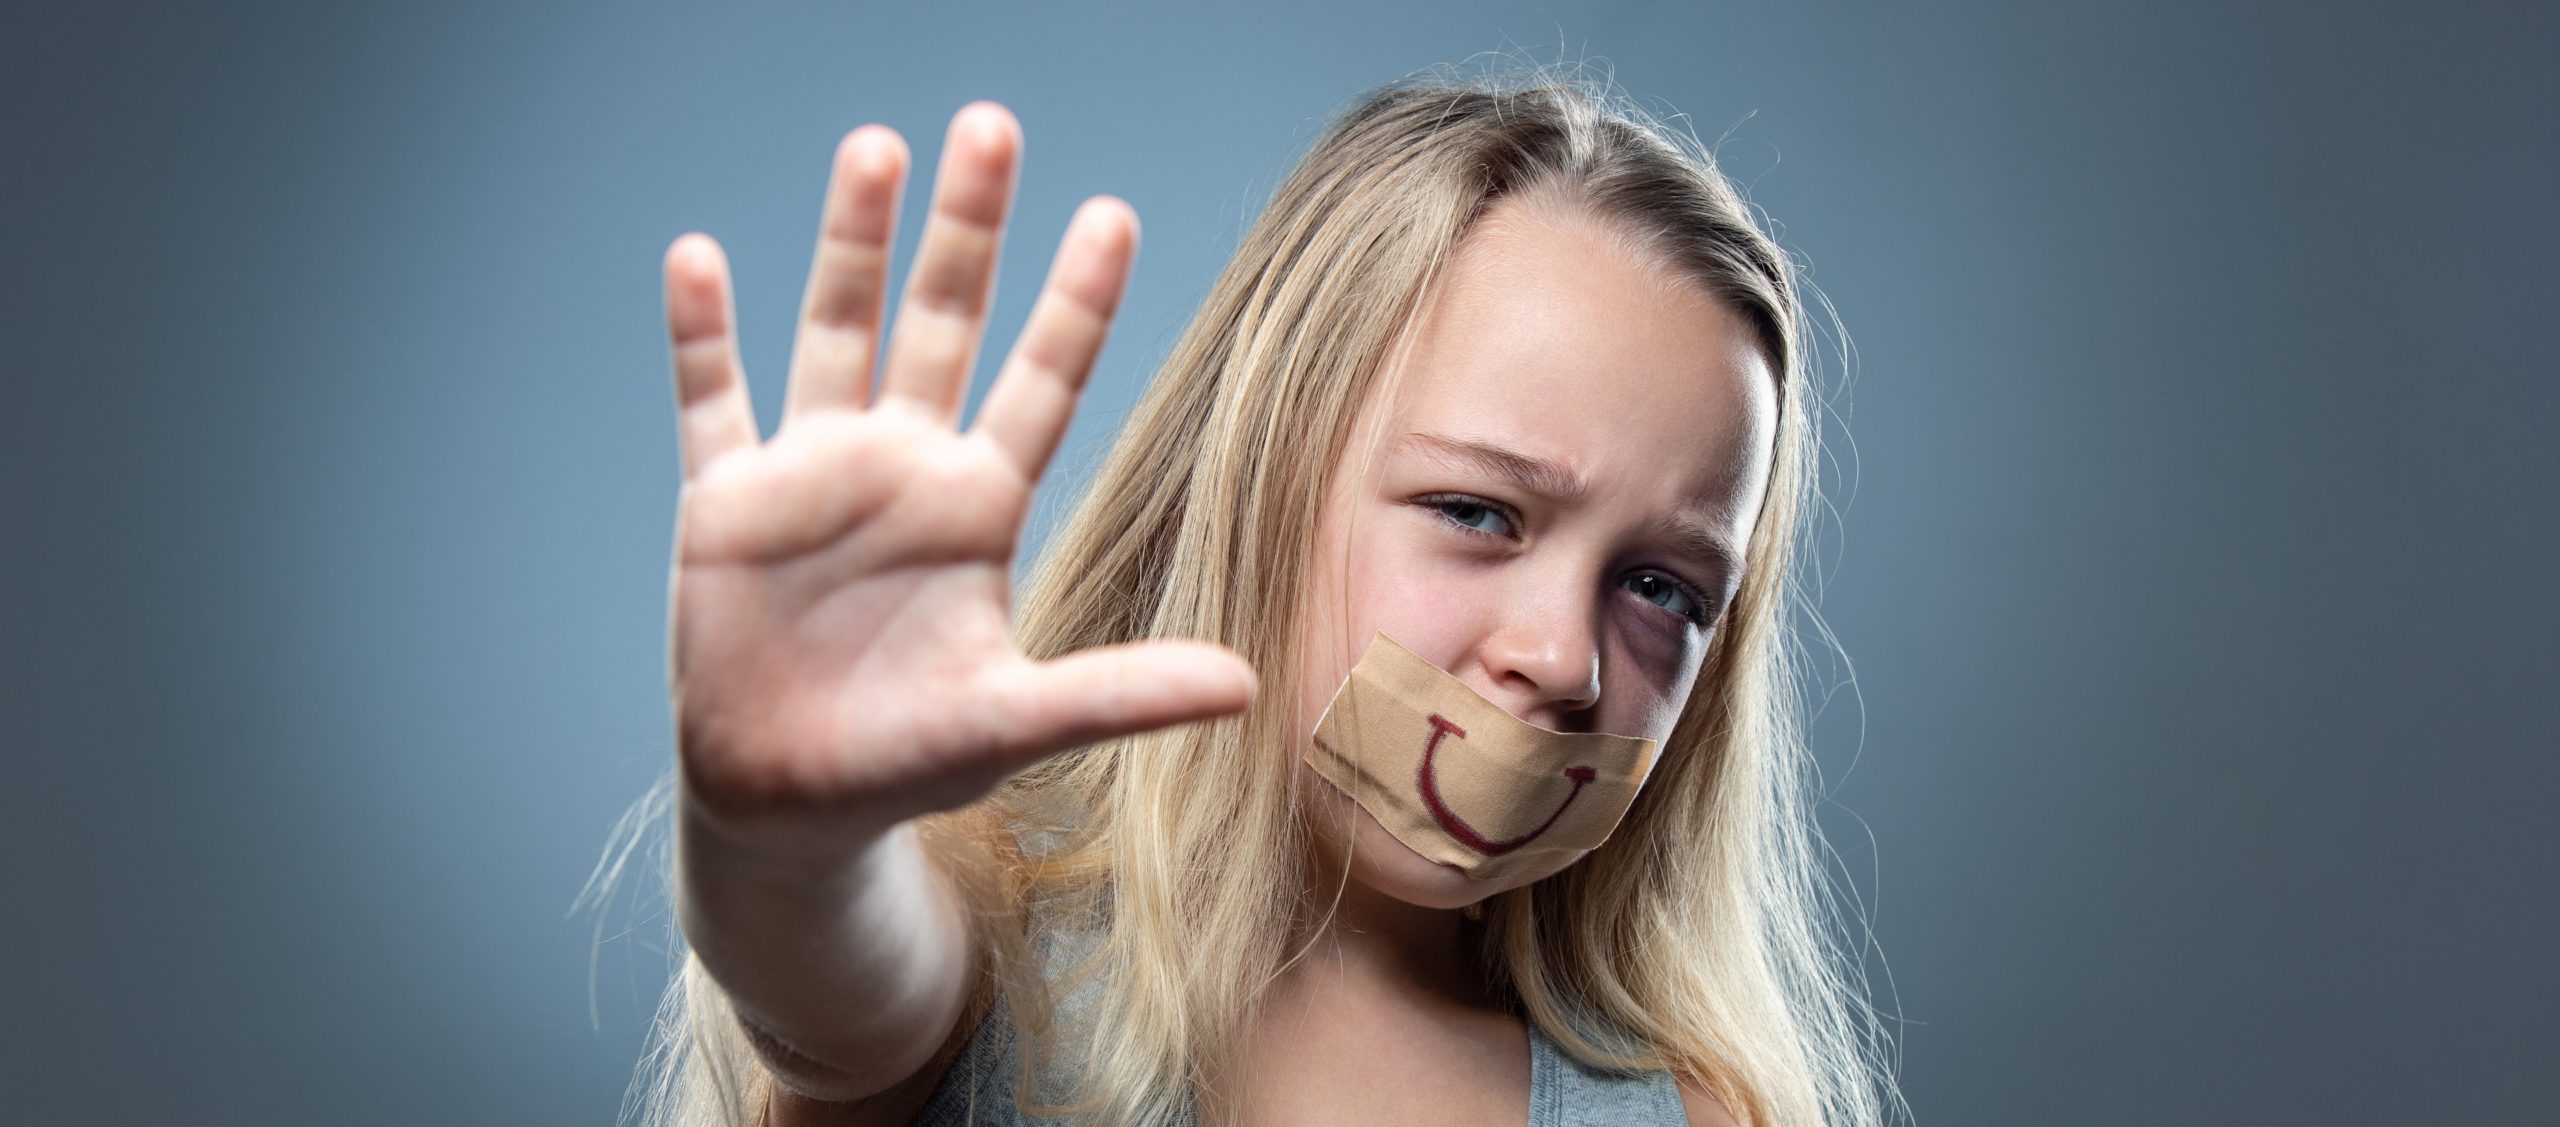 Warum es gefährlich ist, den Begriff sexueller Missbrauch durch „sexualisierte Gewalt“ zu ersetzen